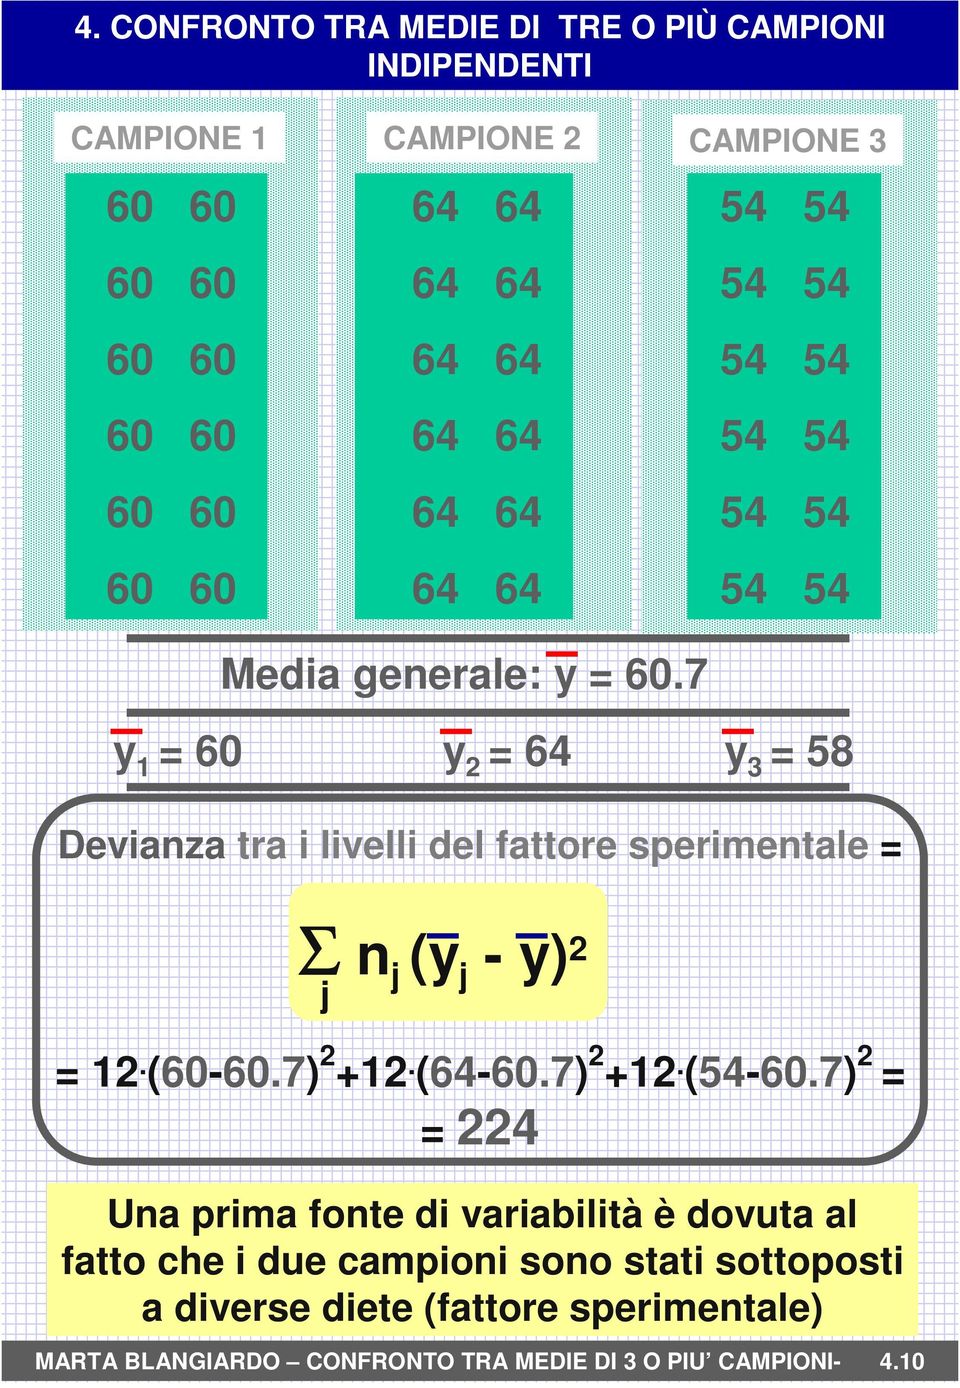 7 y 1 = 60 y 2 = 64 y 3 = 58 Devianza tra i livelli del fattore sperimentale = Σ n j (y j - y) 2 j = 12. (60-60.7) 2 +12. (64-60.7) 2 +12. (54-60.